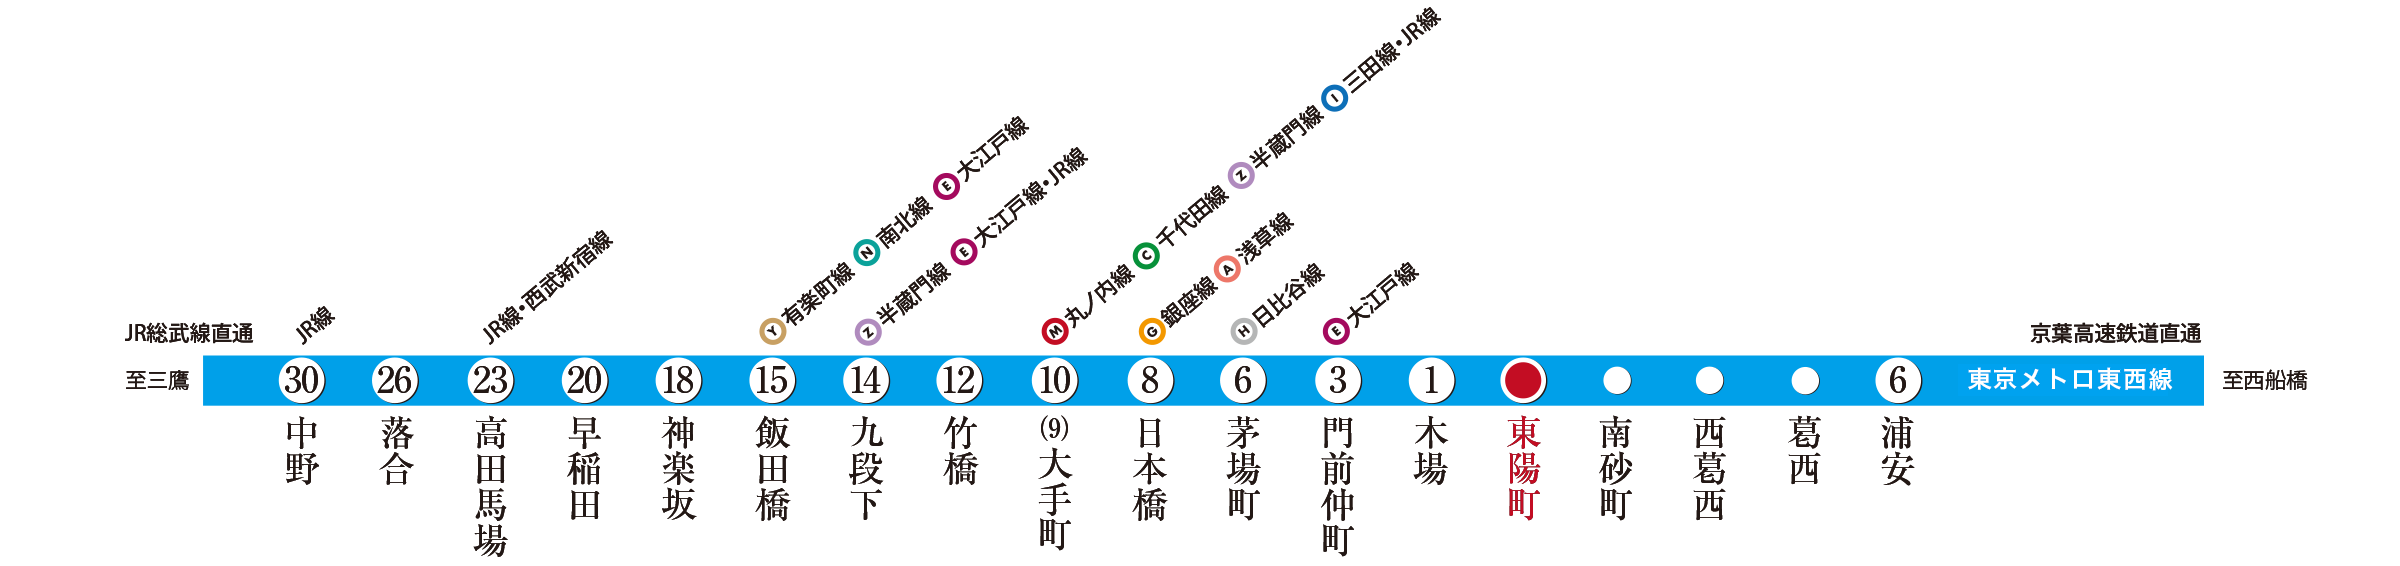 東京メトロ東西線 路線図